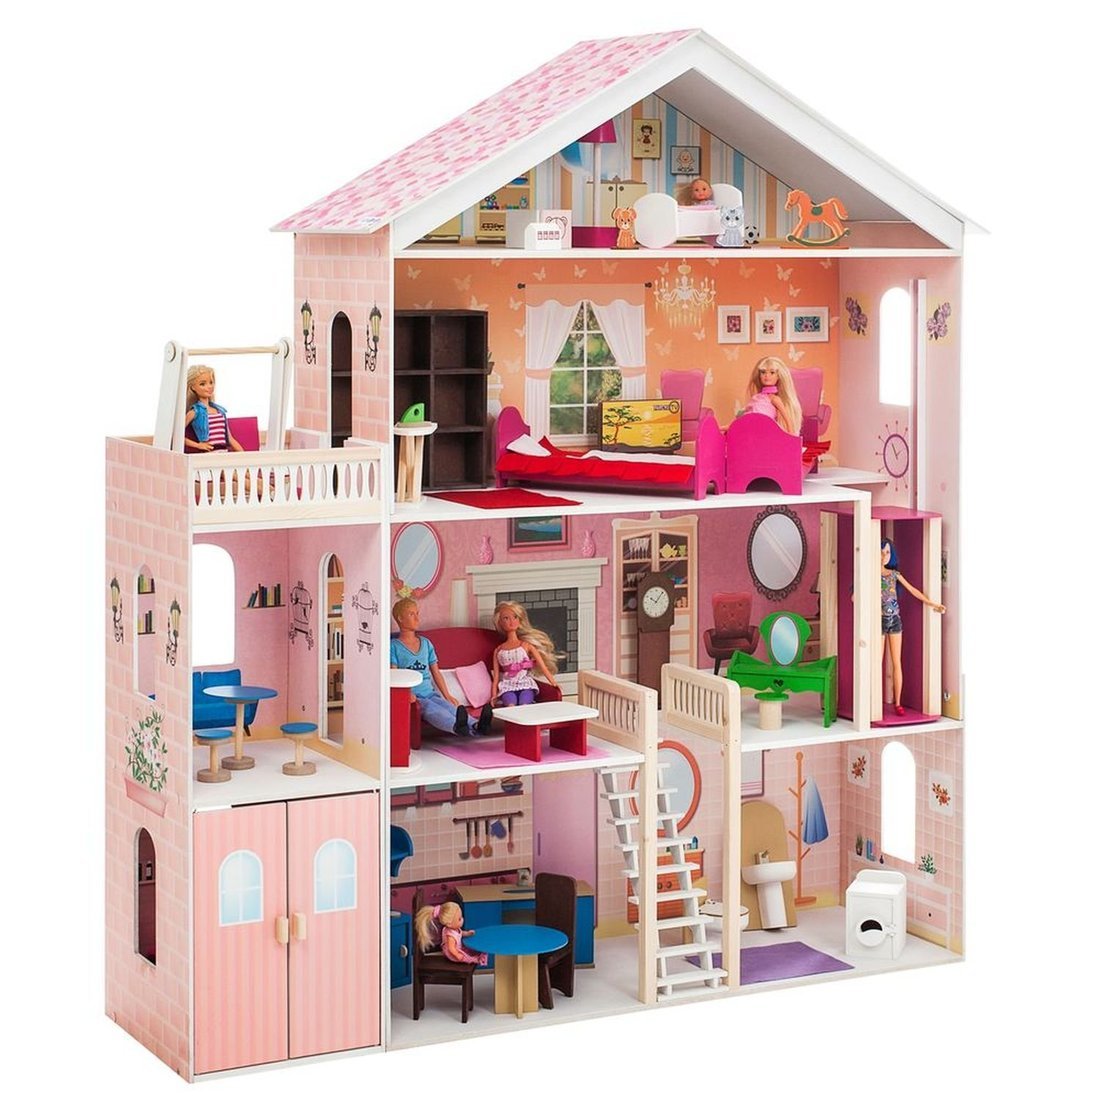 Кукольный домик Мечта, для кукол до 30 см (31 предмет мебели и интерьера)